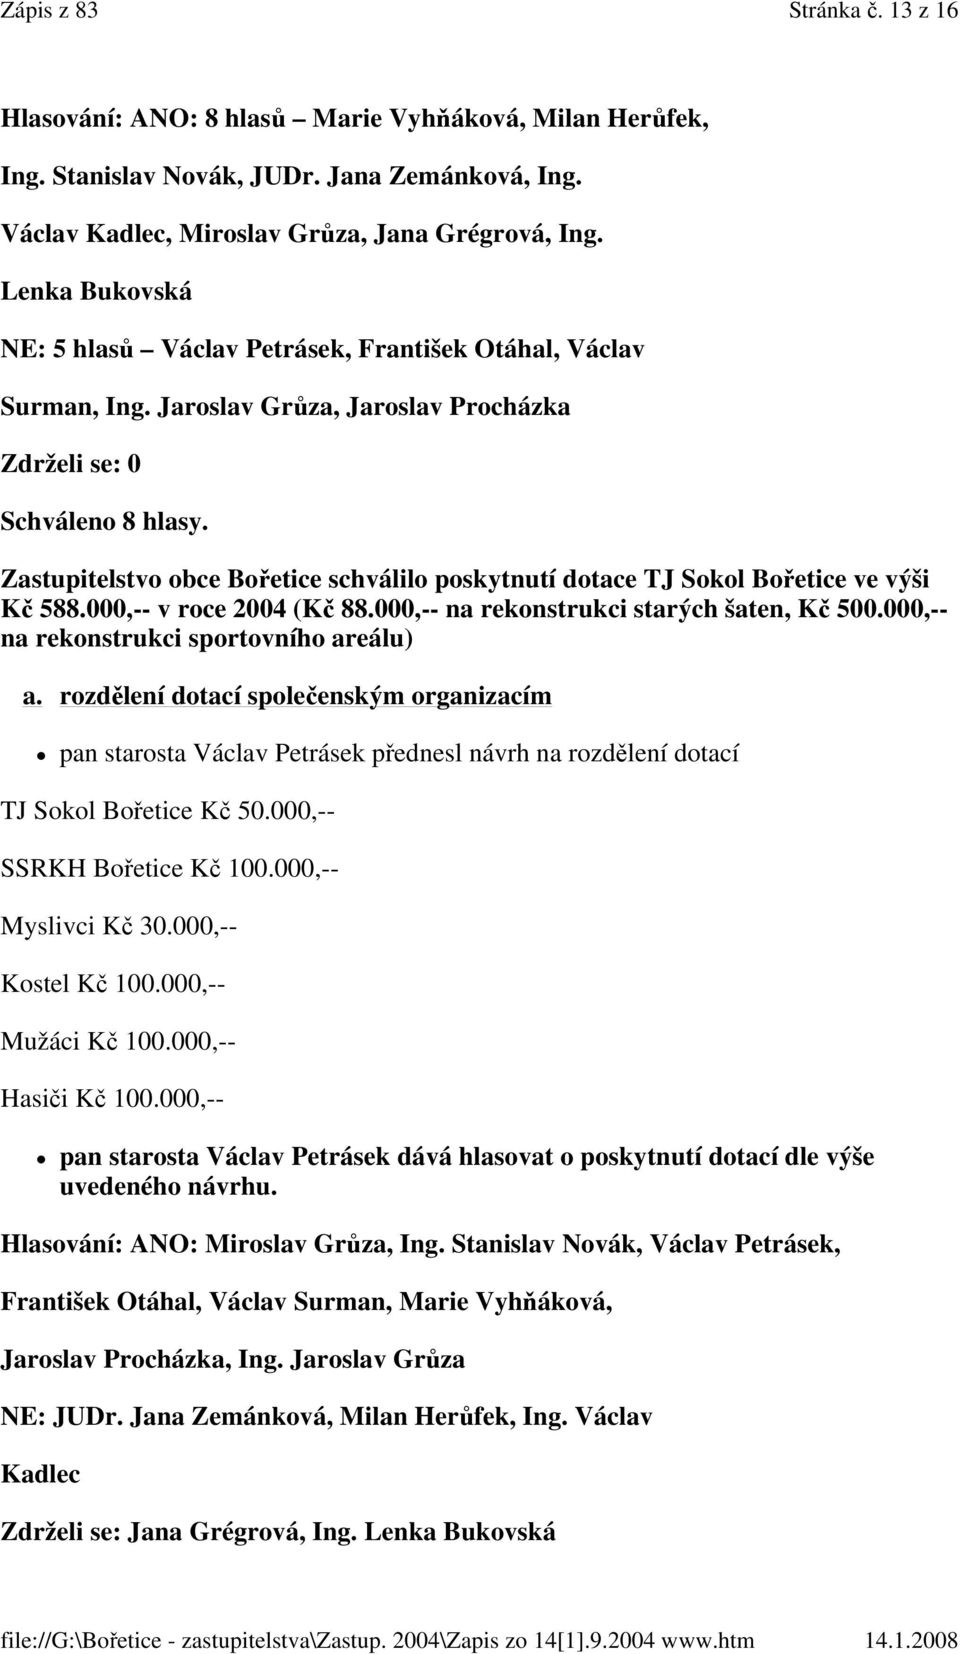 Zastupitelstvo obce Bořetice schválilo poskytnutí dotace TJ Sokol Bořetice ve výši Kč 588.000,-- v roce 2004 (Kč 88.000,-- na rekonstrukci starých šaten, Kč 500.